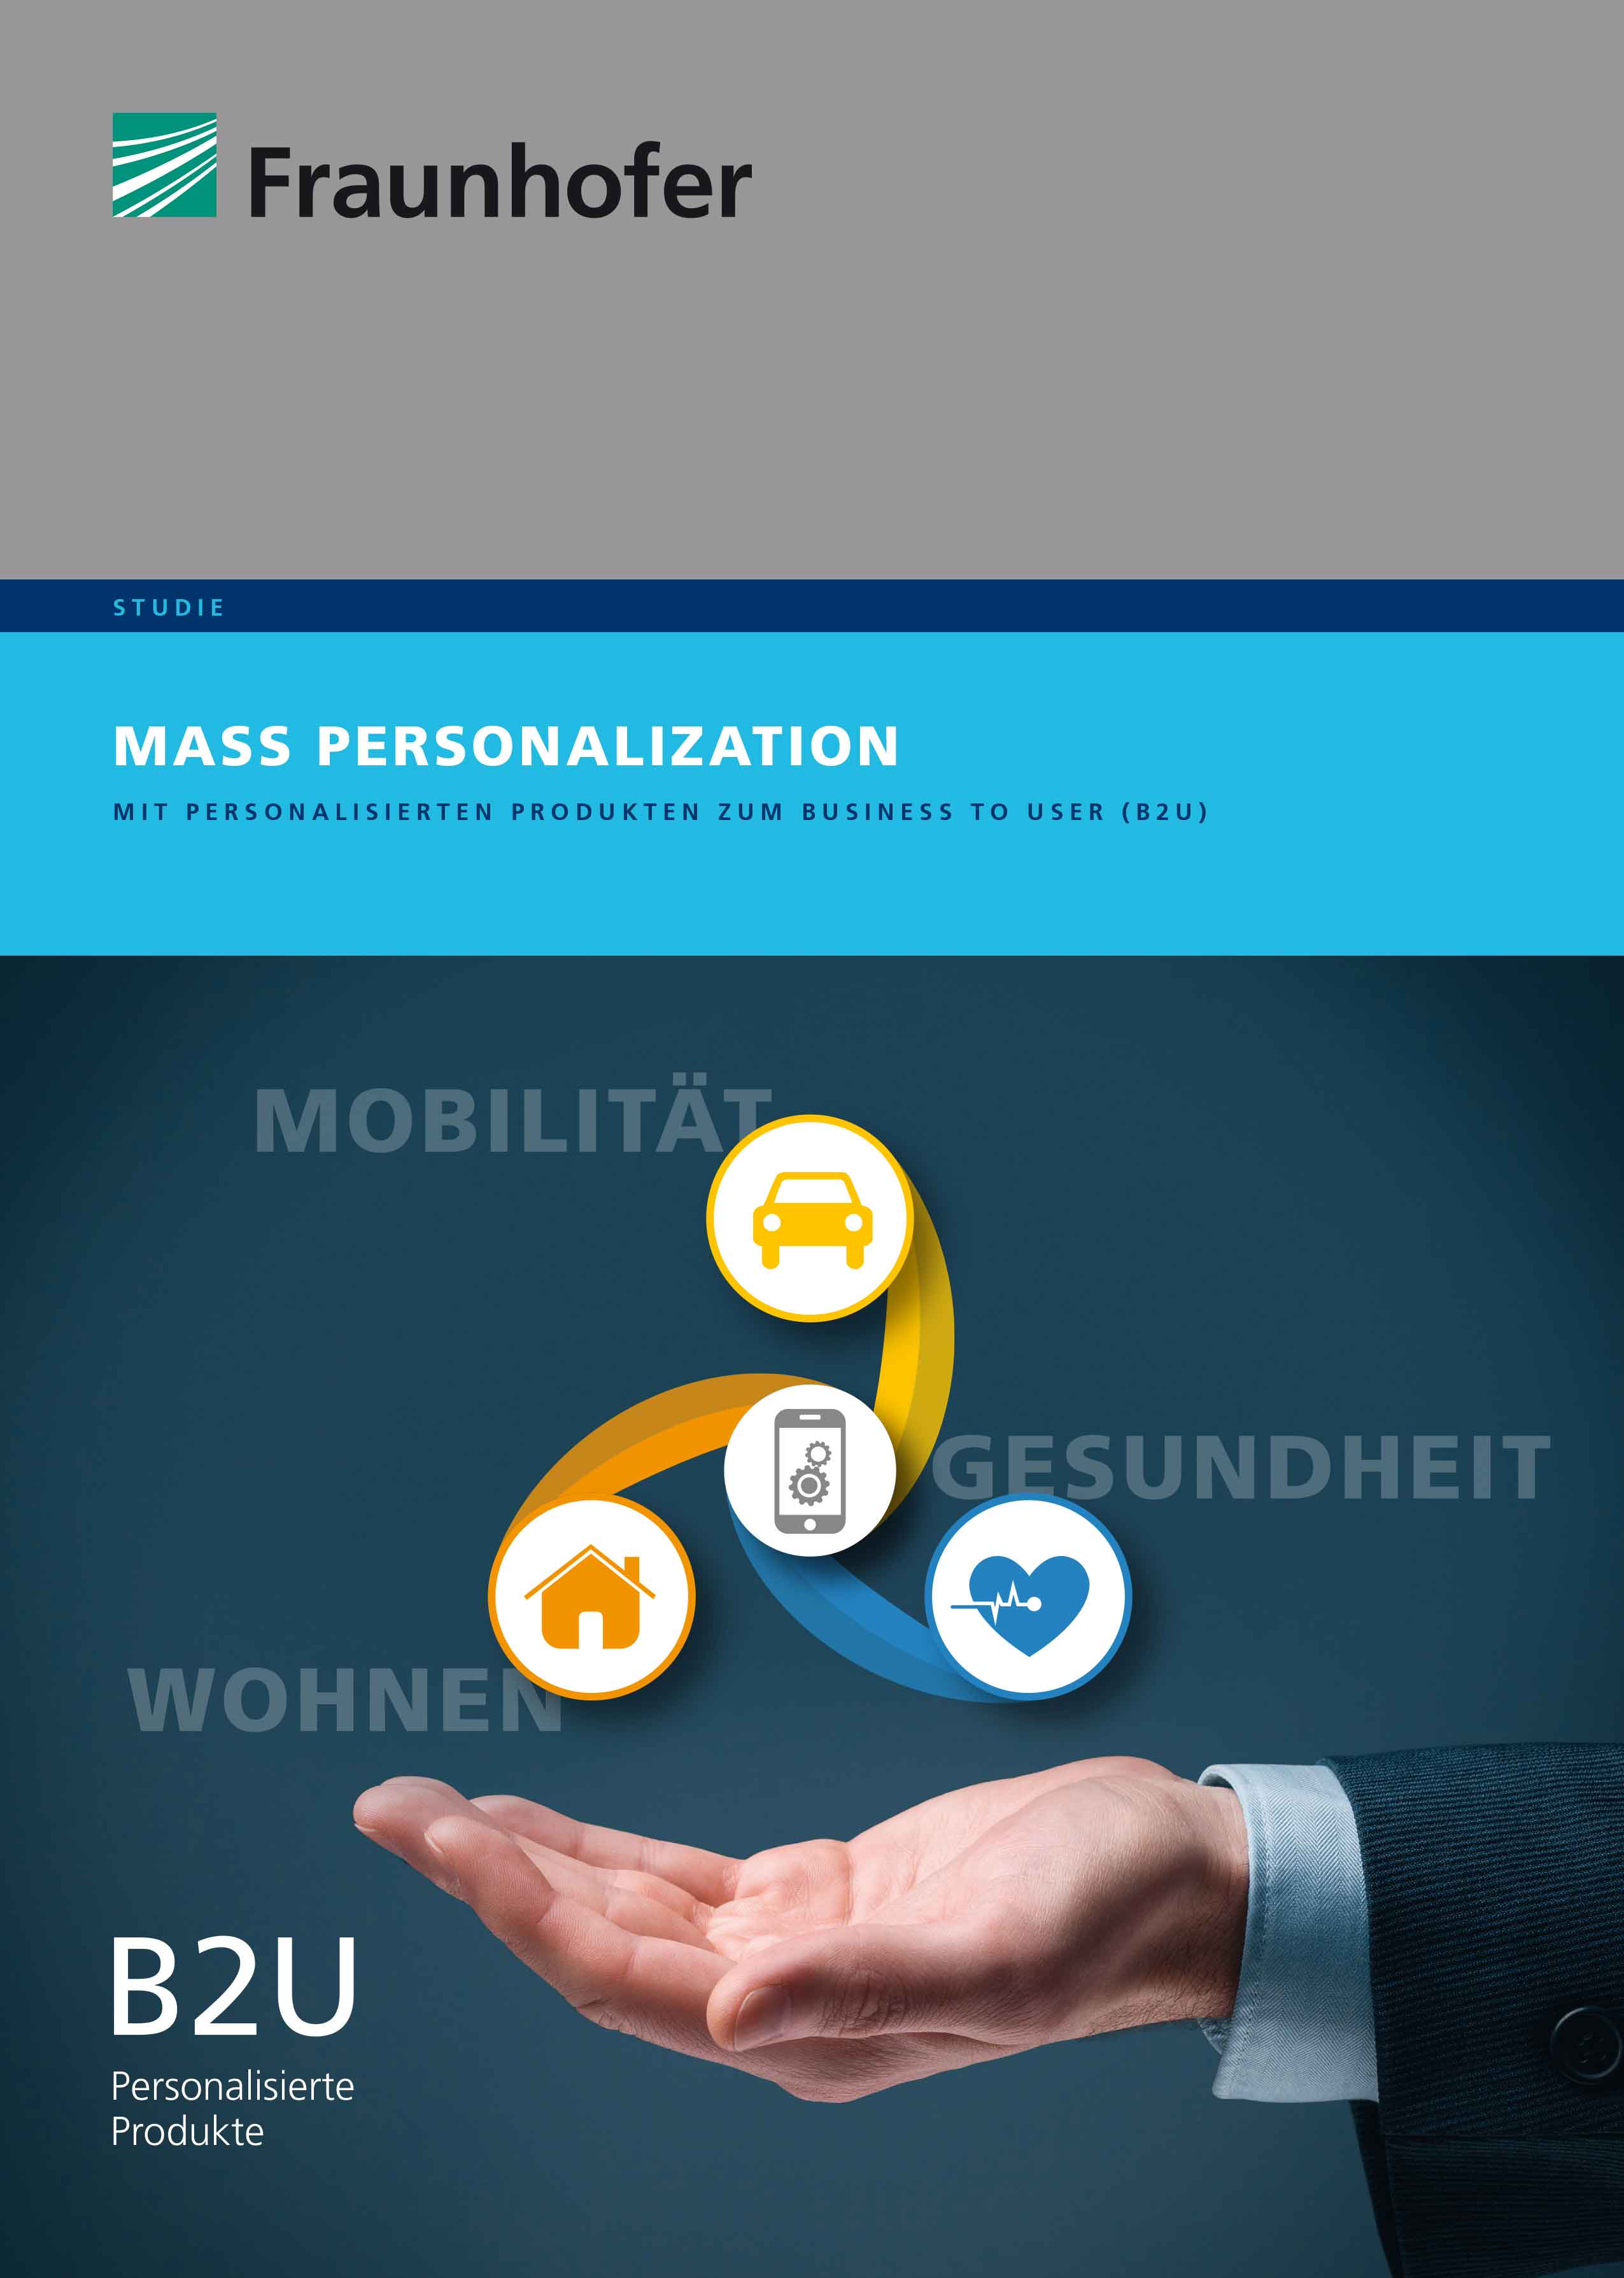 Abbildung der Fraunhofer-Studie Mass Personalization.